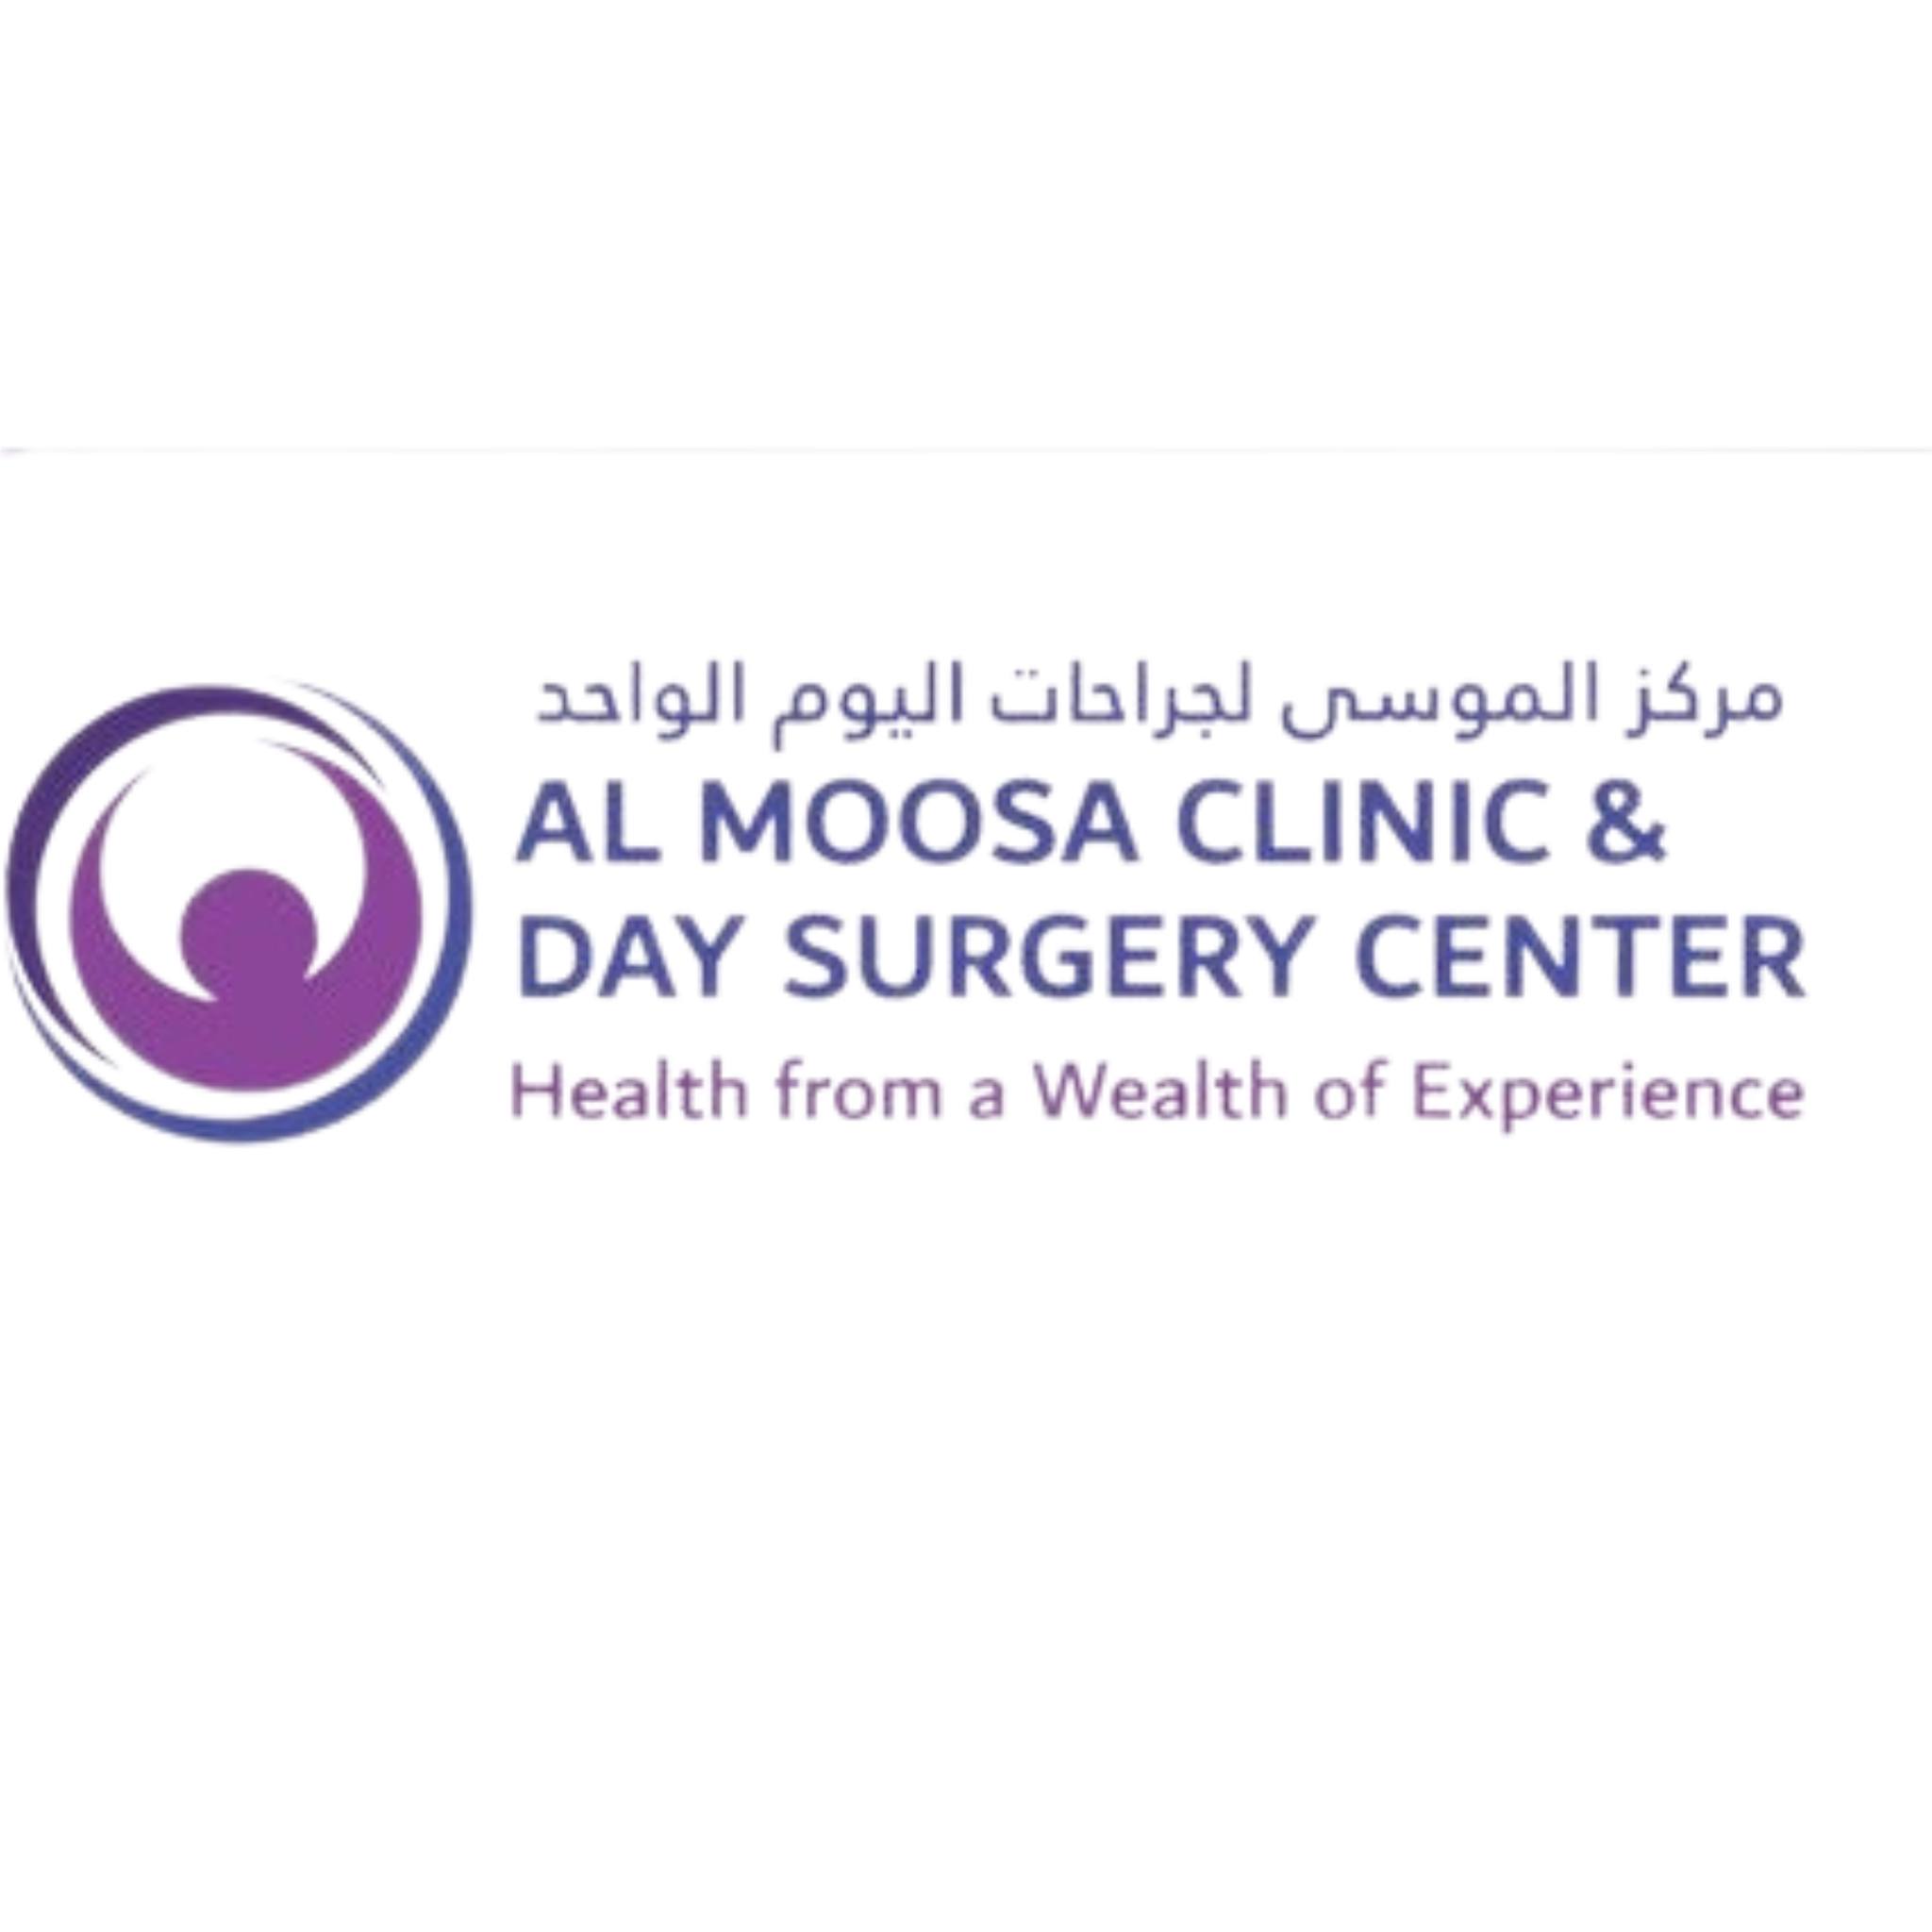 Al Mousa Clinic & Day Surgery Center